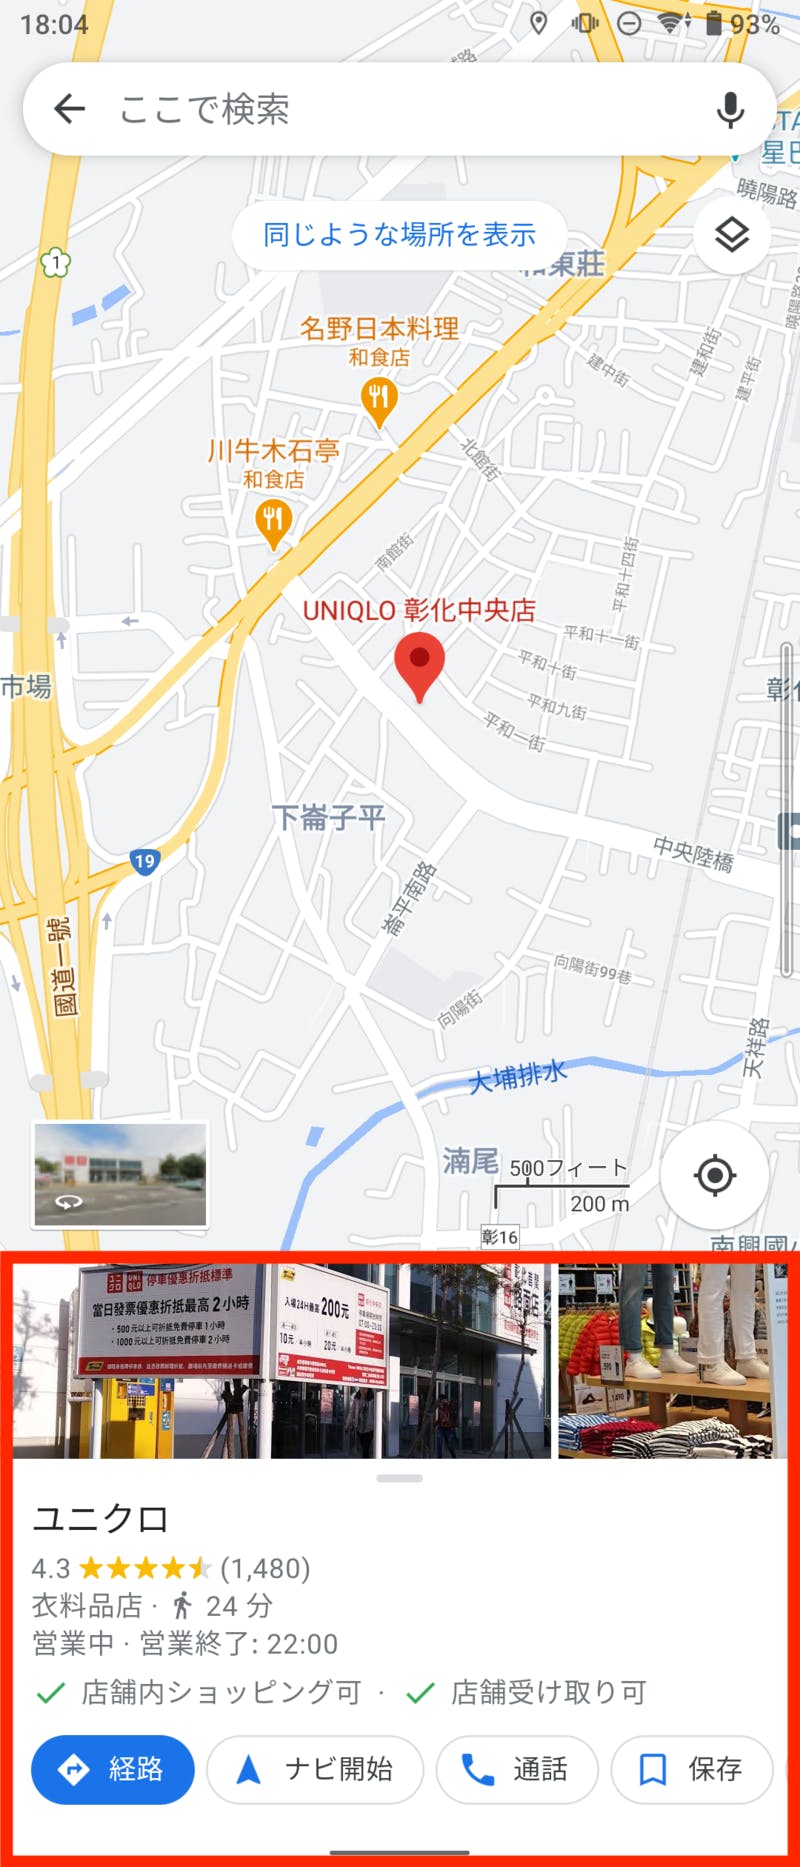 検索したい店舗・施設の名称を入力すると、店舗・施設が赤いピンで表示される